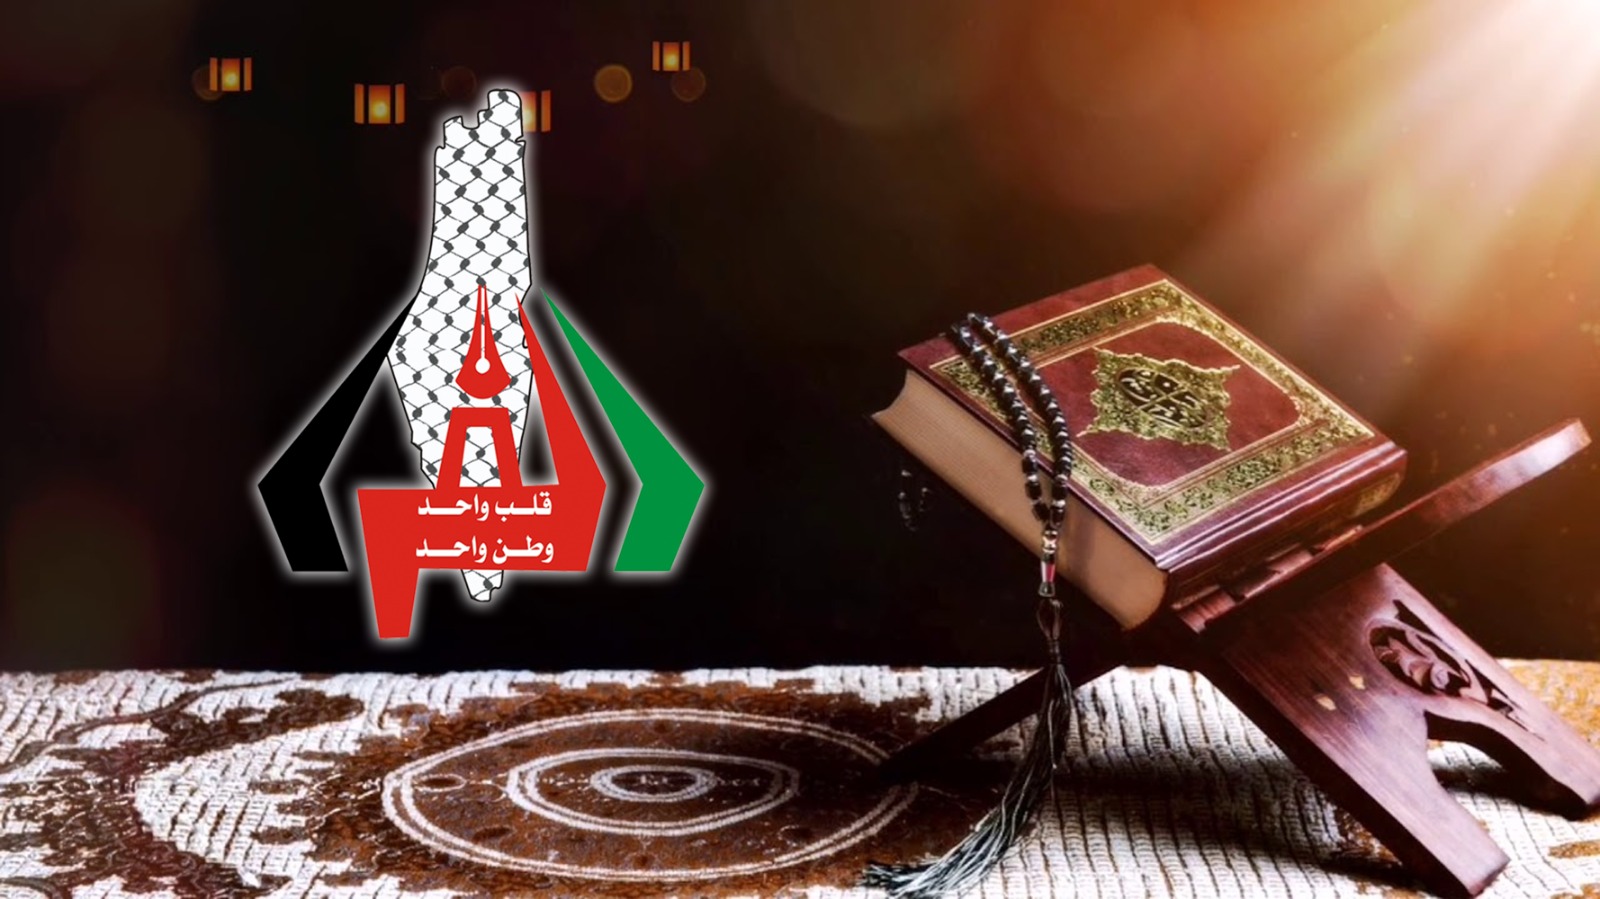 الطالب عبدالرحمن عادل الفرا يتم حفظ القرآن الكريم كاملا